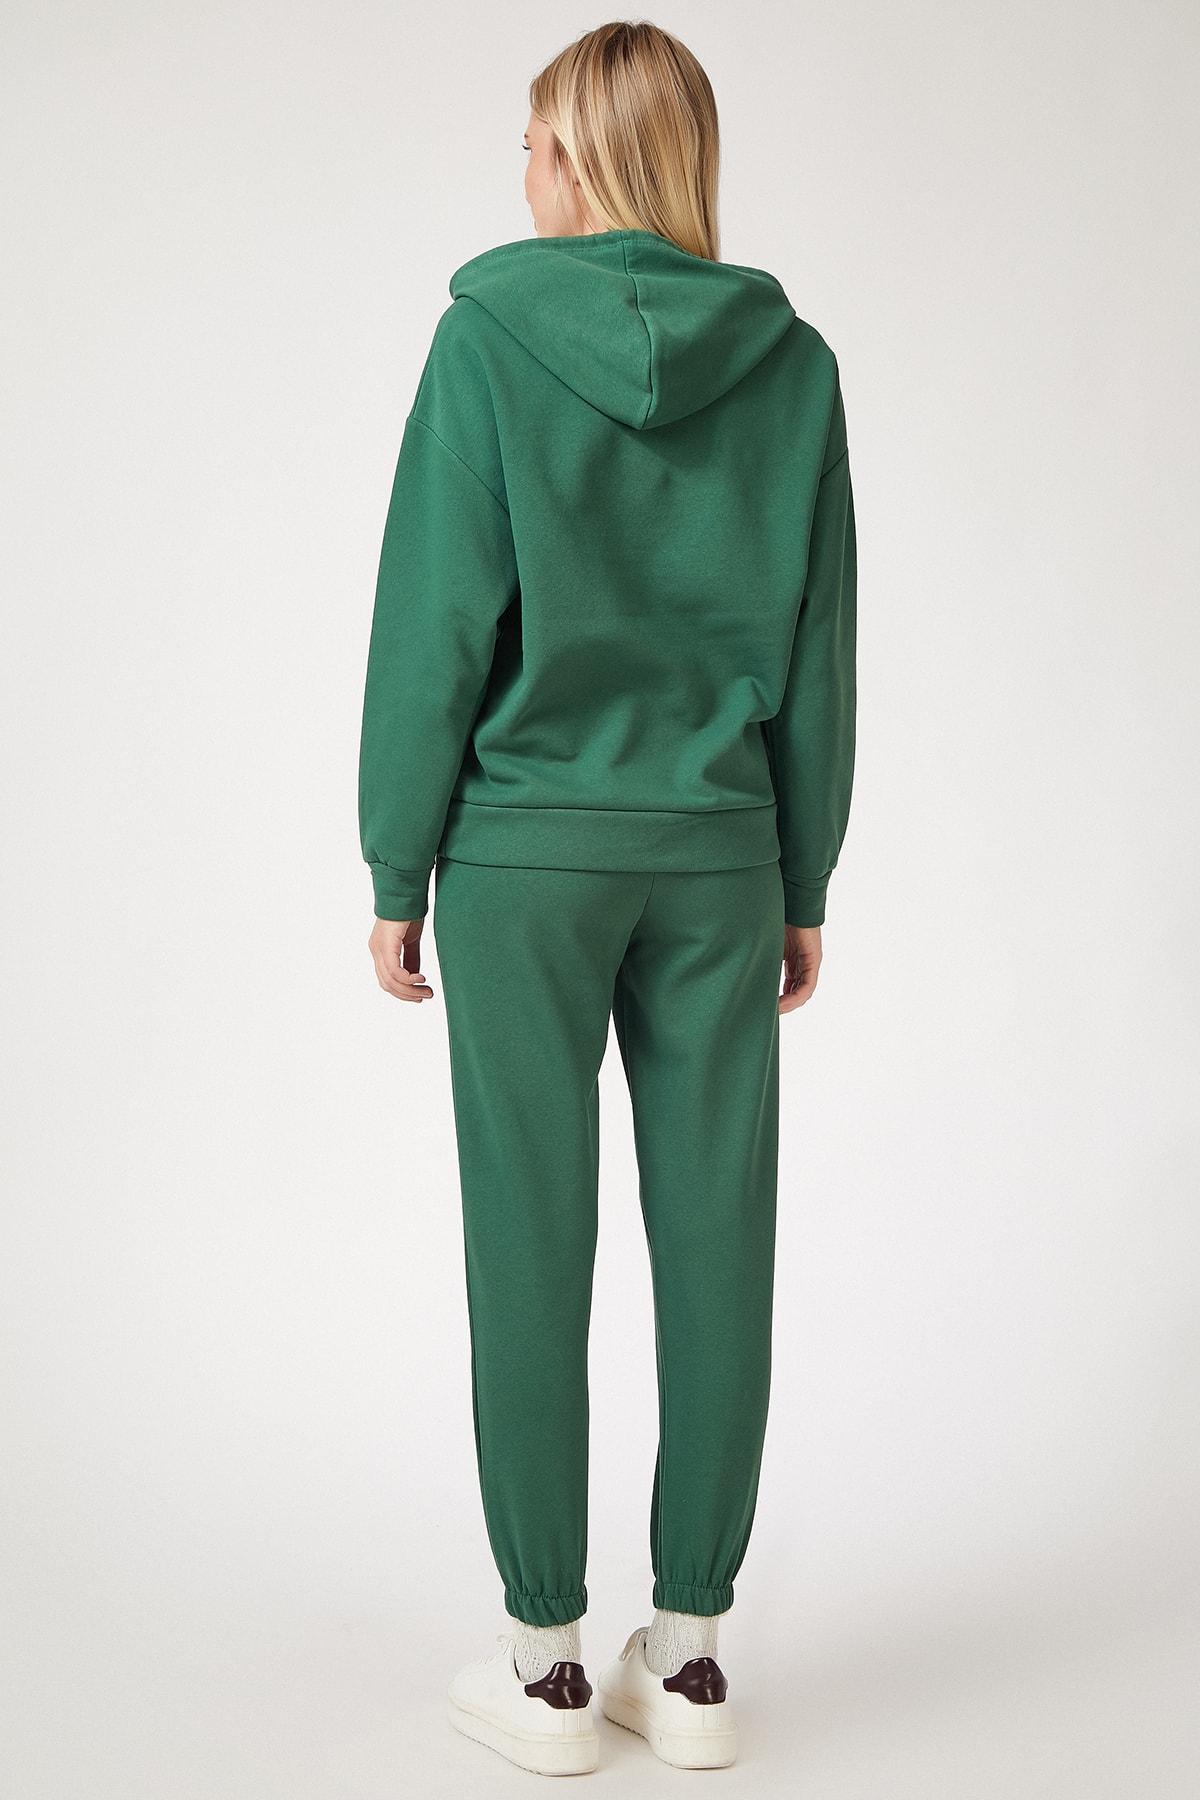 Women's Green Fleece Winter Track Suit